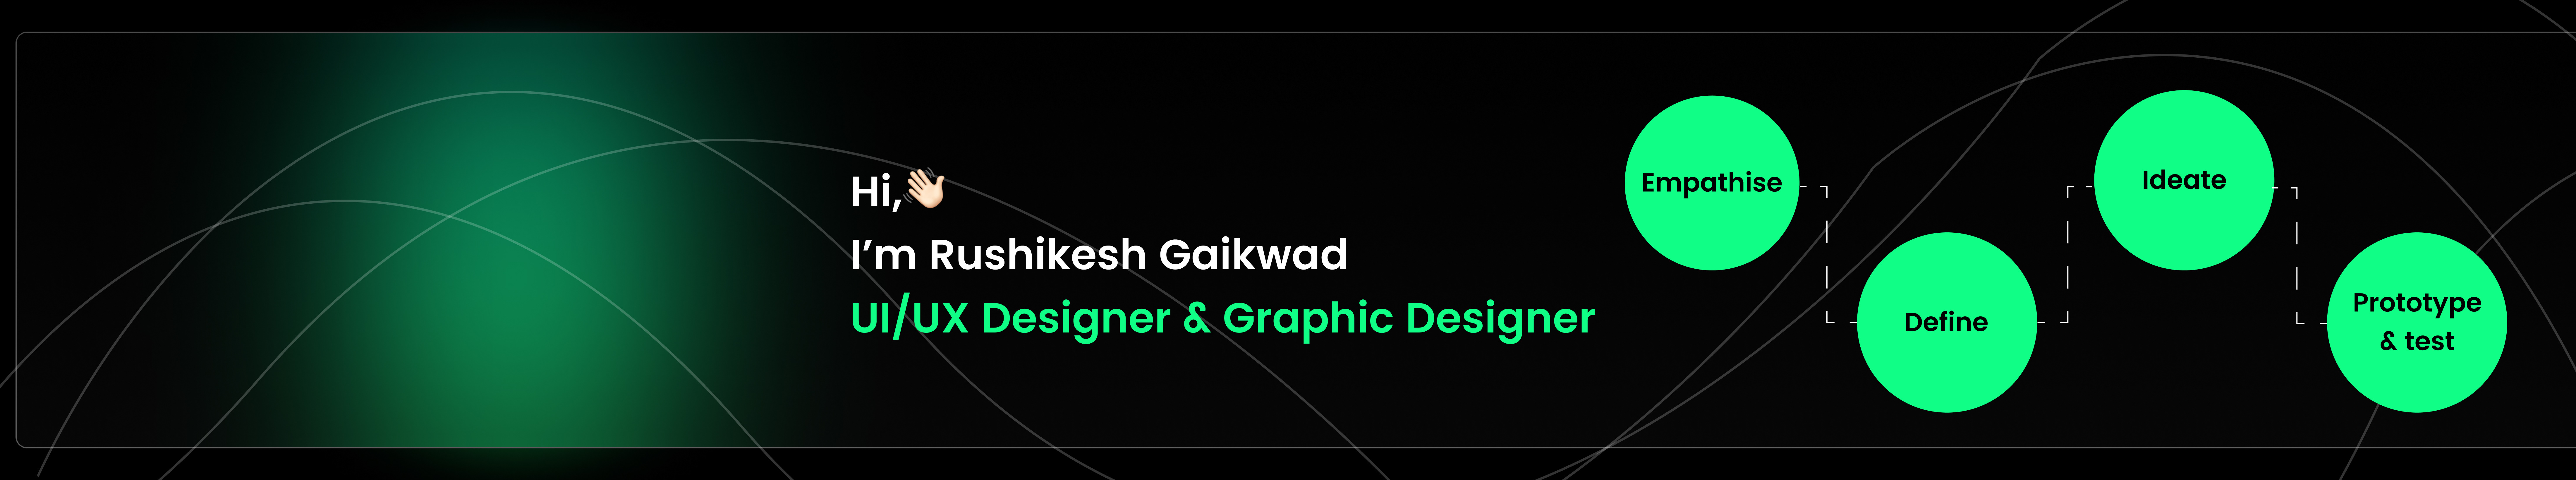 Rushikesh Gaikwad's profile banner